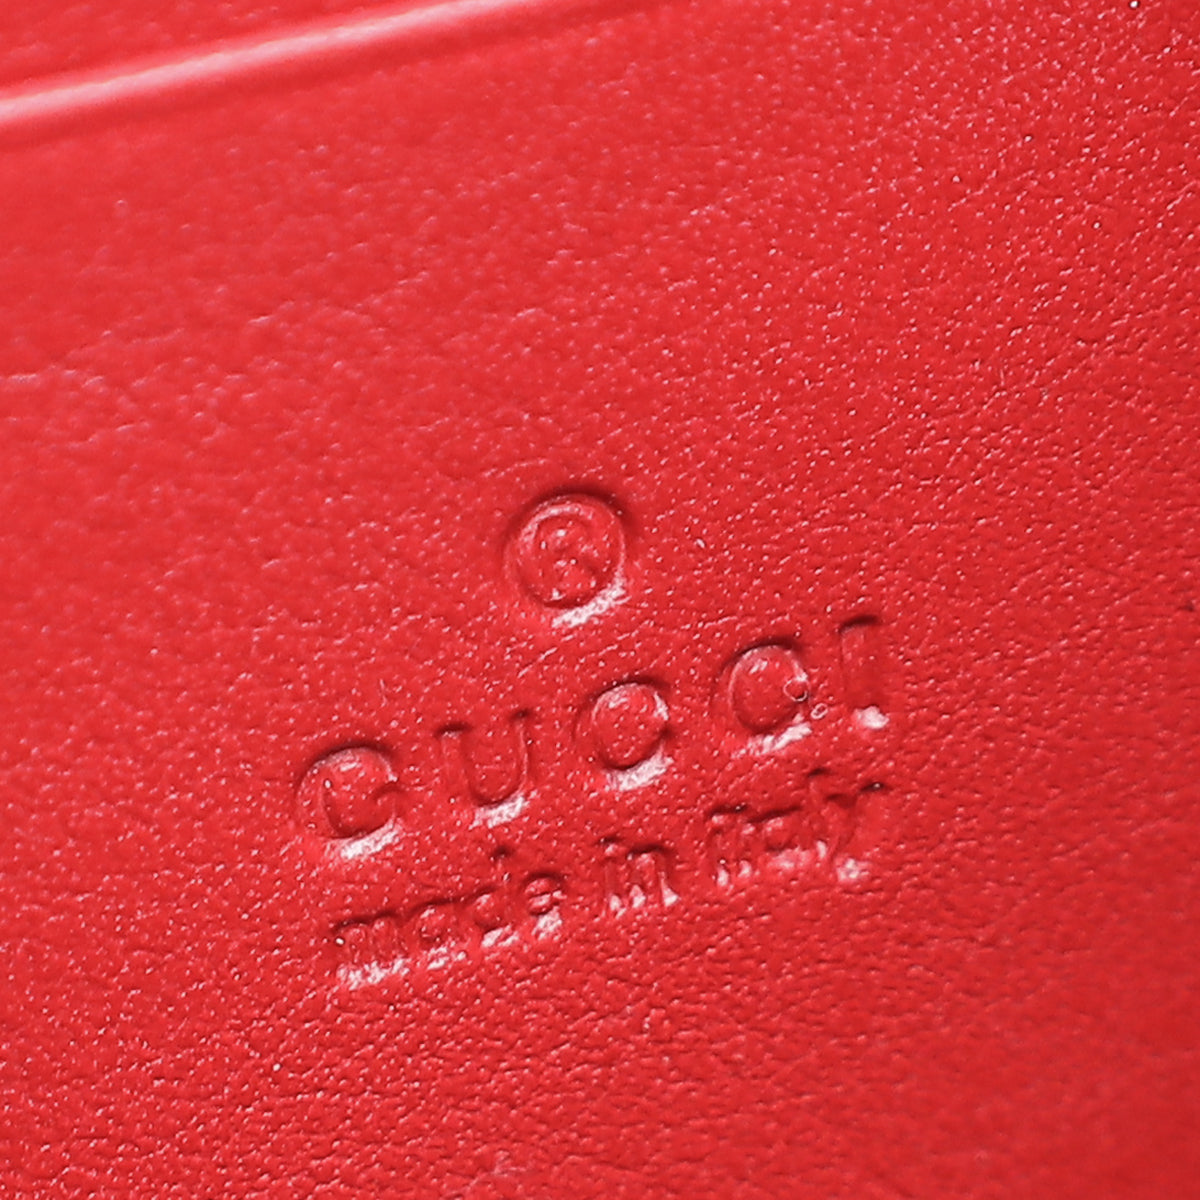 Gucci Red Velvet GG Marmont Mini Shoulder Bag